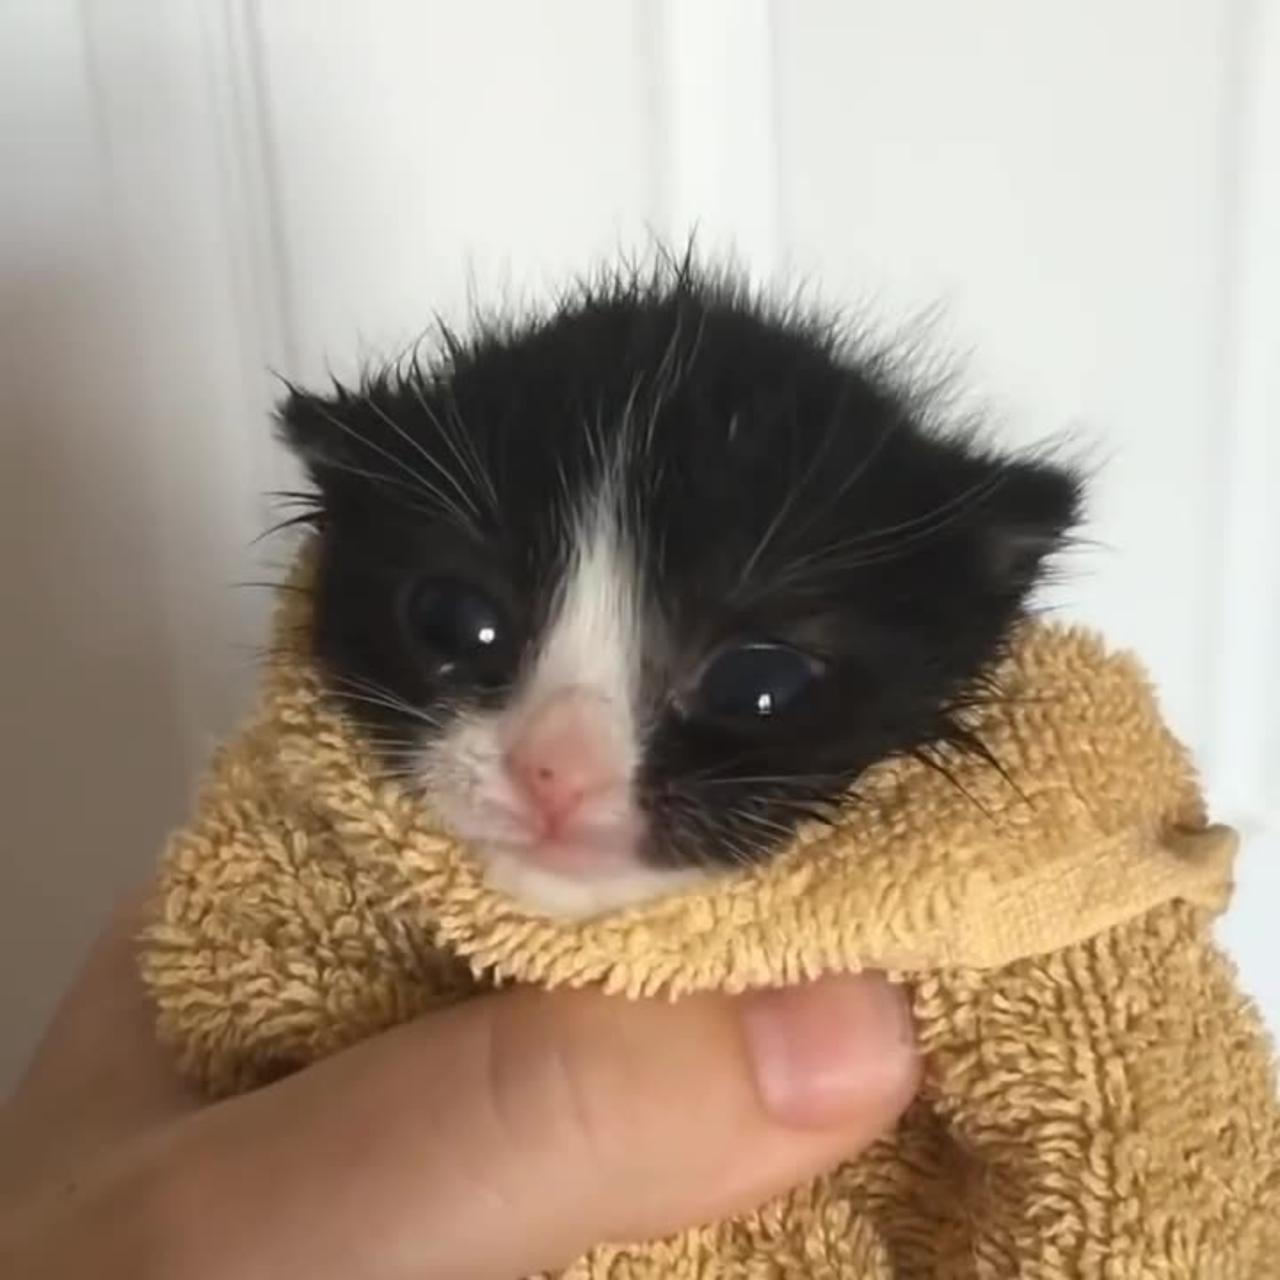 kitten in towel meme (No Edits)